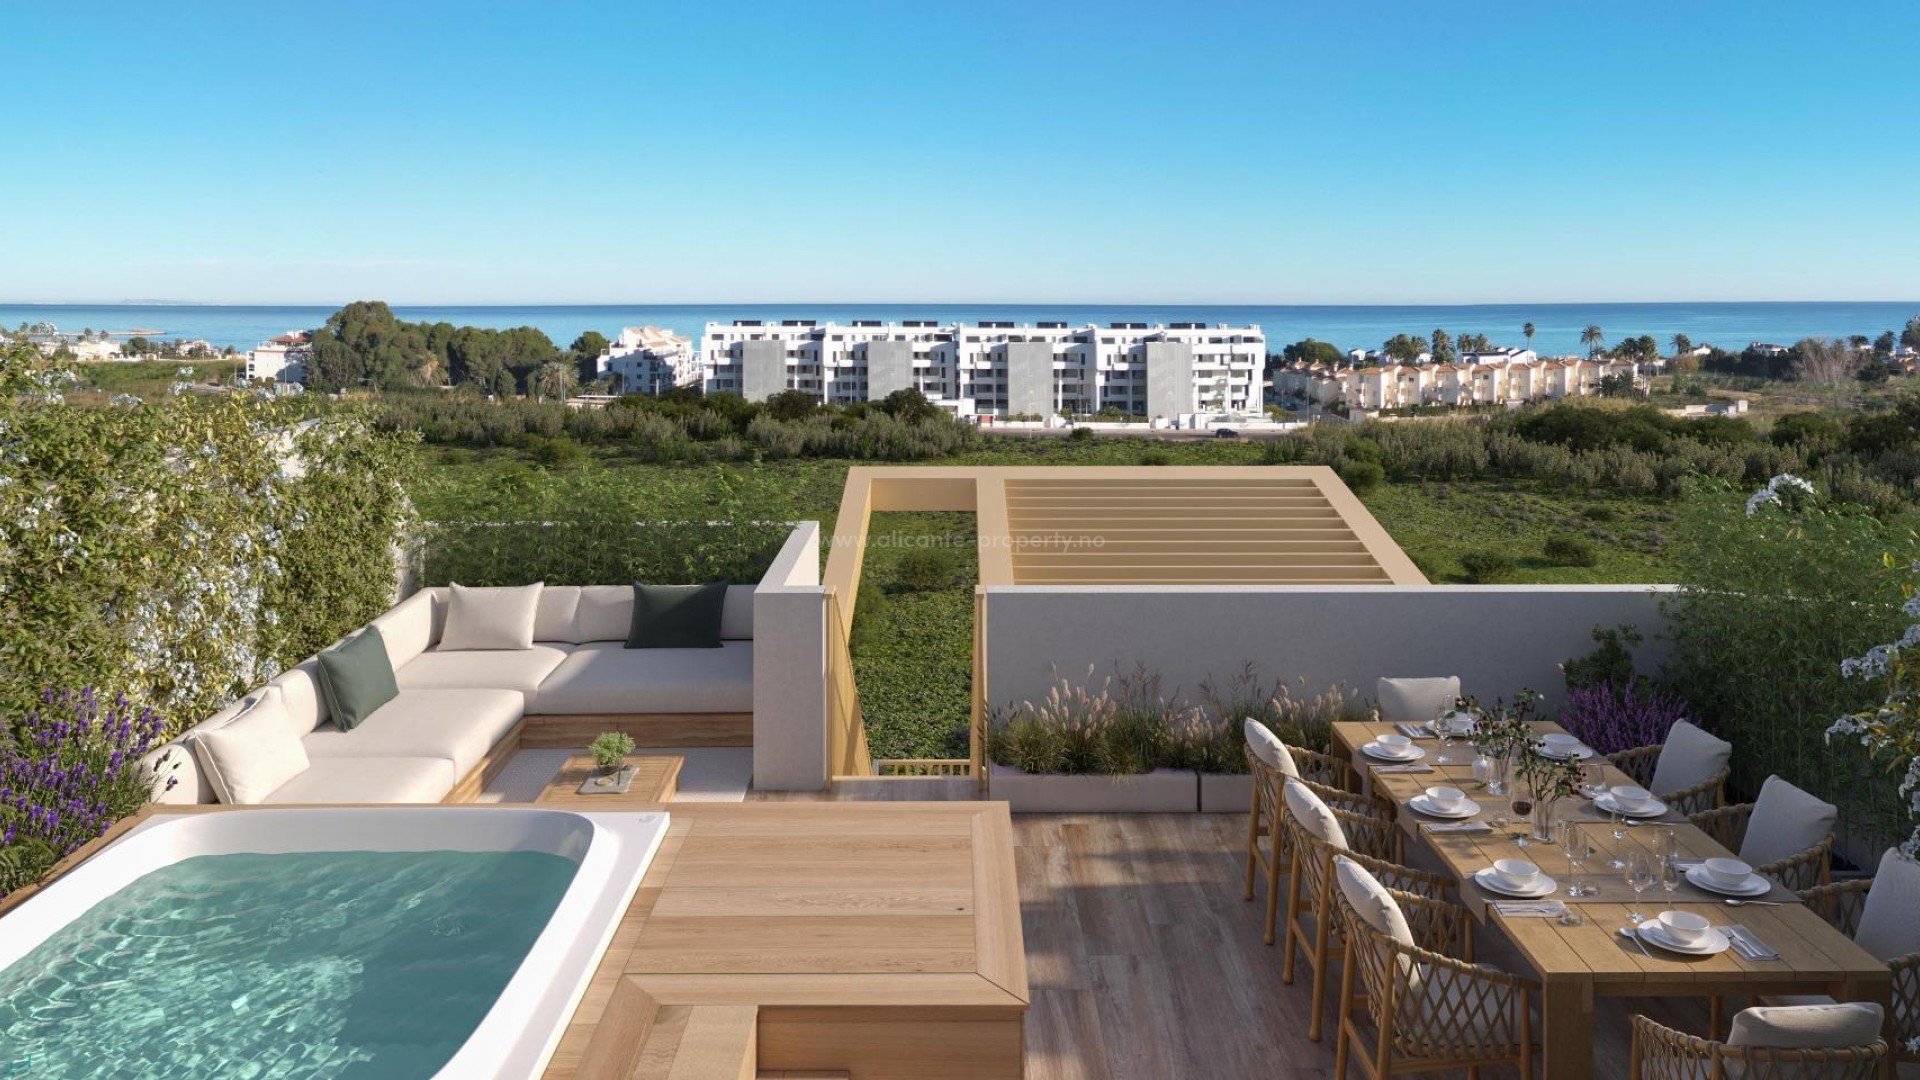 Eksklusive nye boliger leiligheter/rekkehus i El Vergel ved Denia, 2/3 soverom, 2 bad, hver bolig har sine egne private områder, både innendørs og utendørs